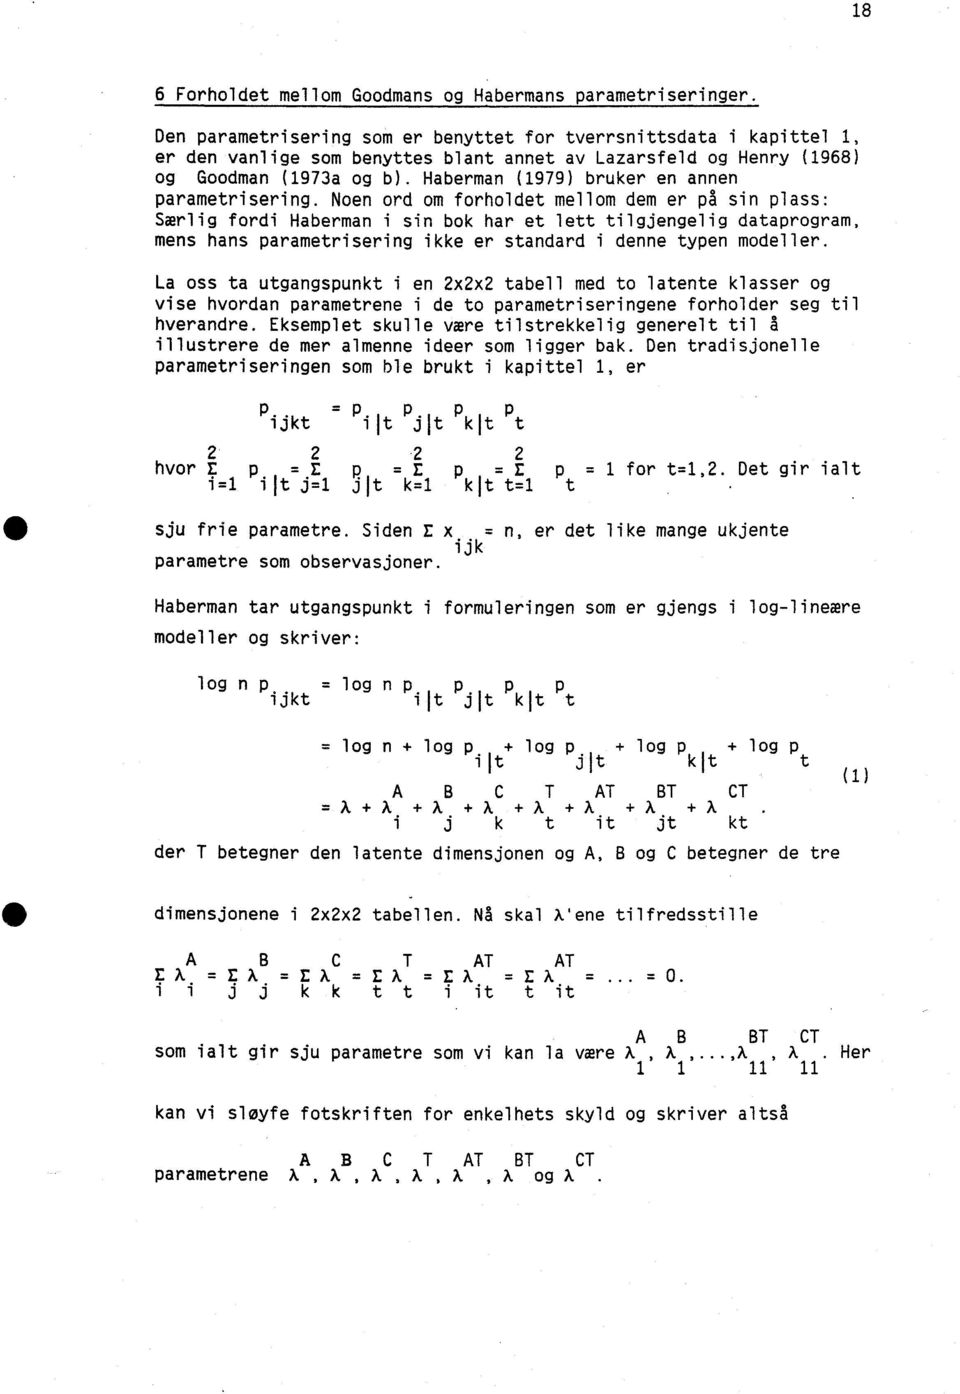 Haberman (1979) bruker en annen parametrisering.